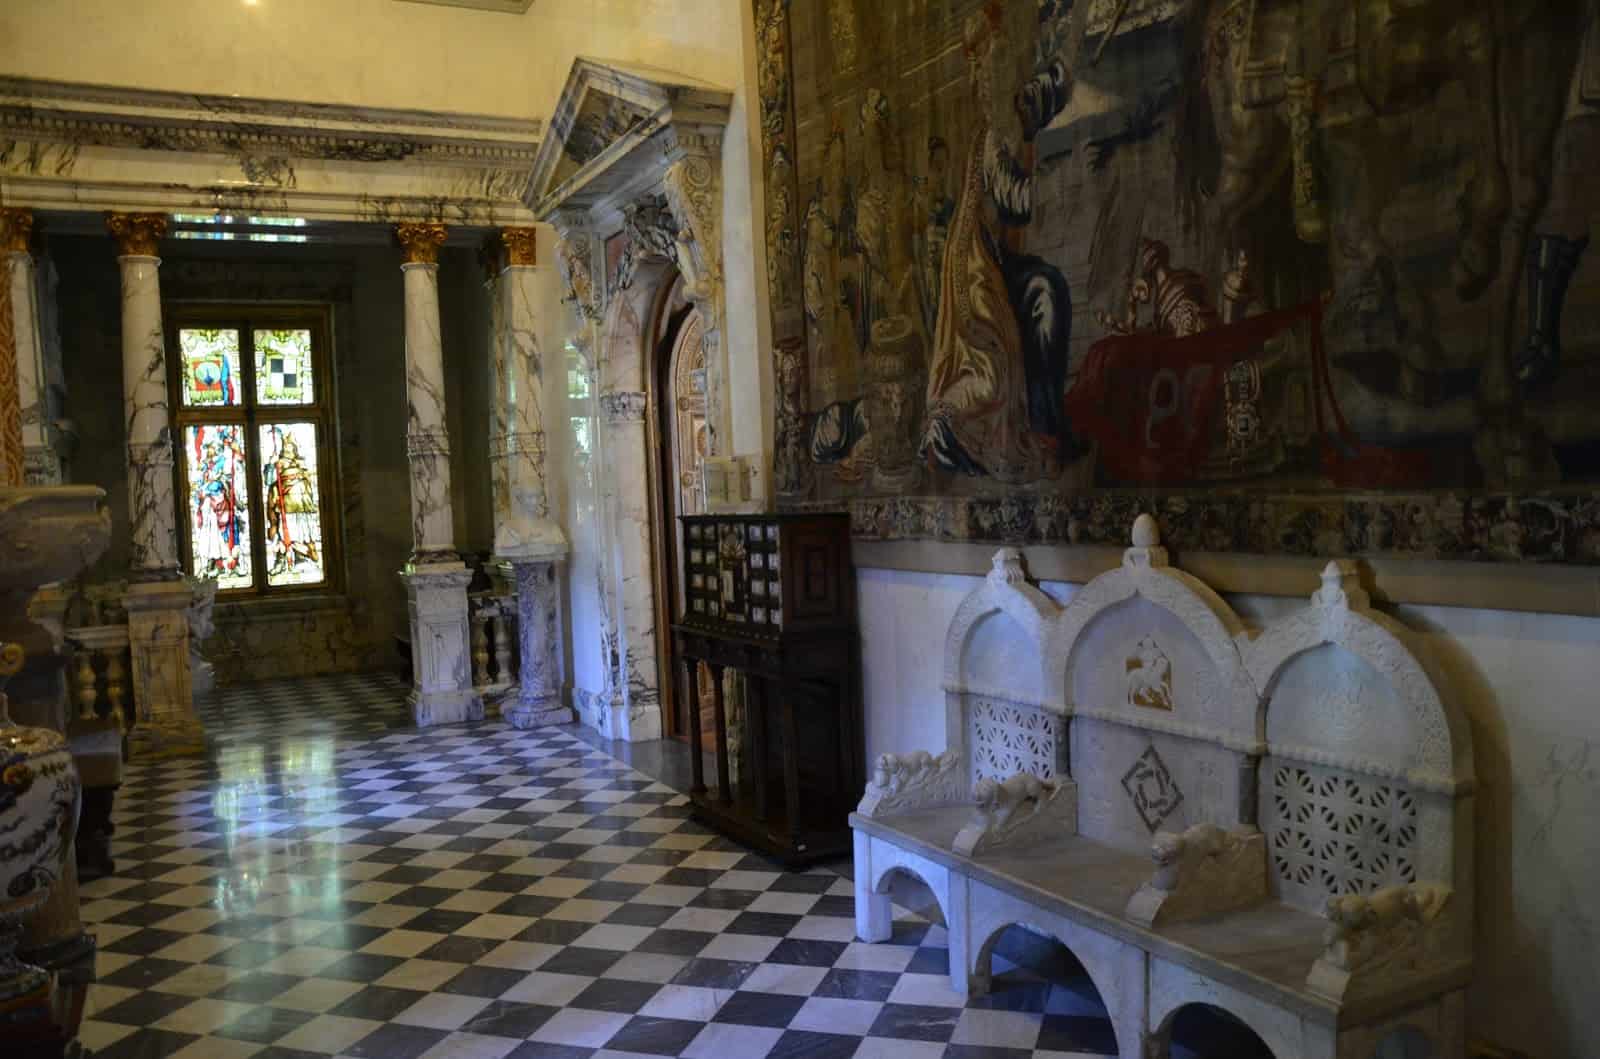 Italian room at Peleș Castle in Sinaia, Romania